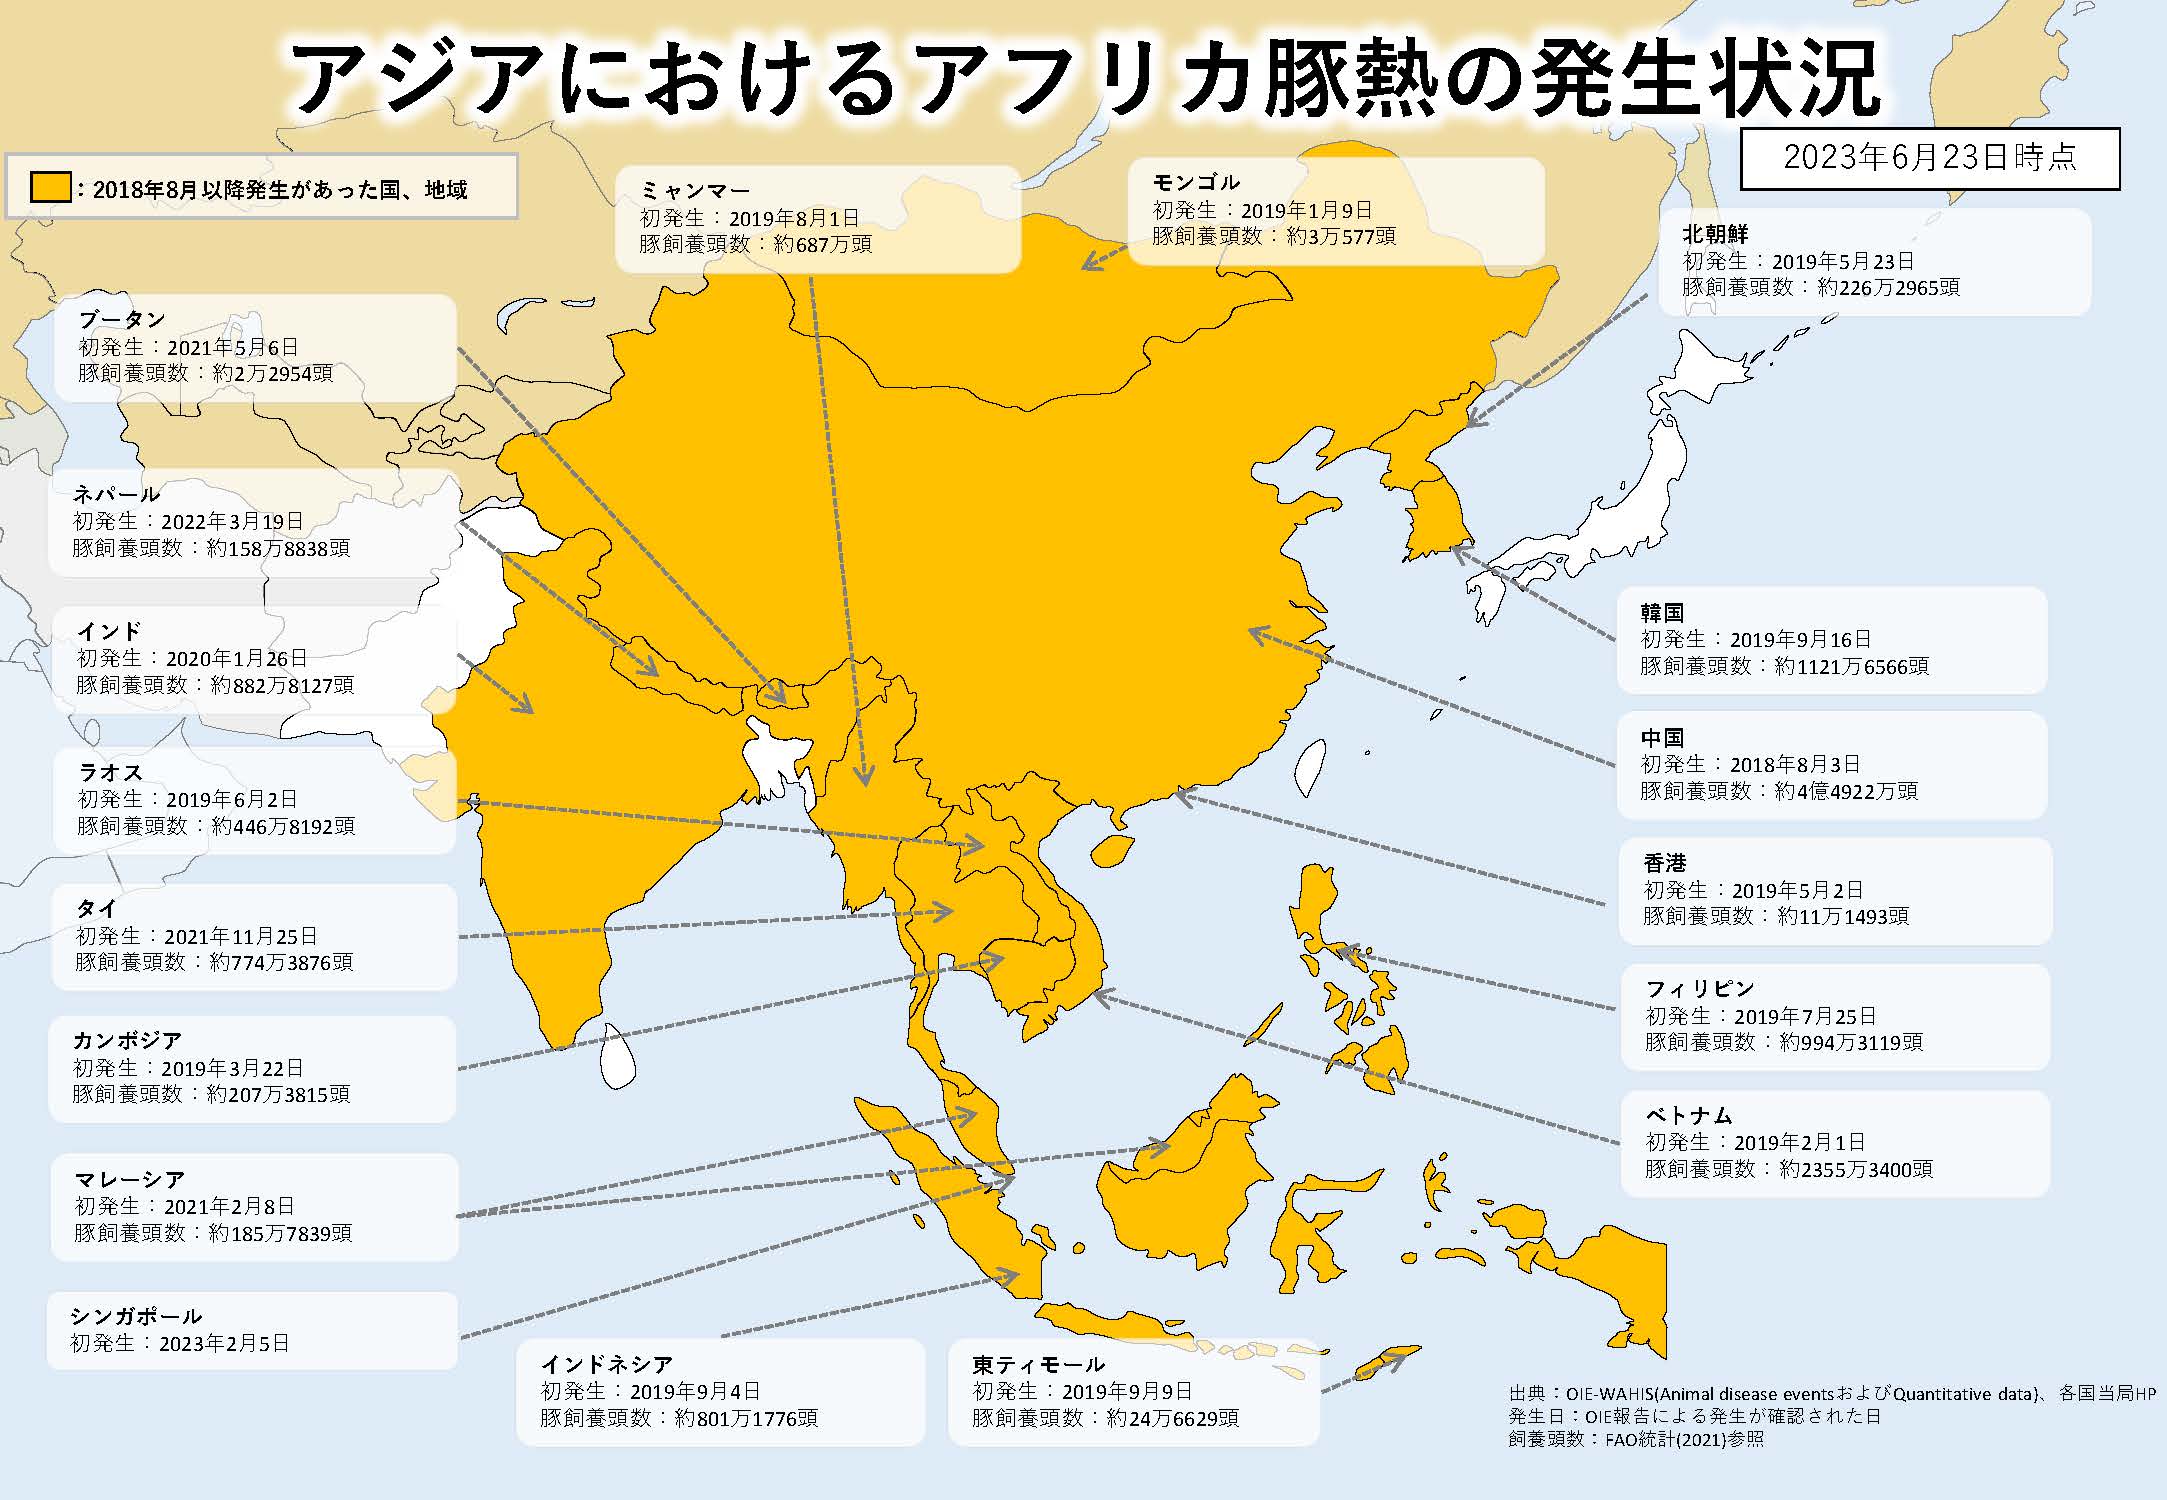 2020年2月16日現在のアジアにおけるASFの発生状況を示した地図のイラスト（提供は農林水産省）。2018年8月から2020年2月16日までに発生があった国、地域は中国、ベトナム、モンゴル、カンボジア、香港、北朝鮮、ラオス、ミャンマー、フィリピン、韓国、東ティモール、インドネシア。